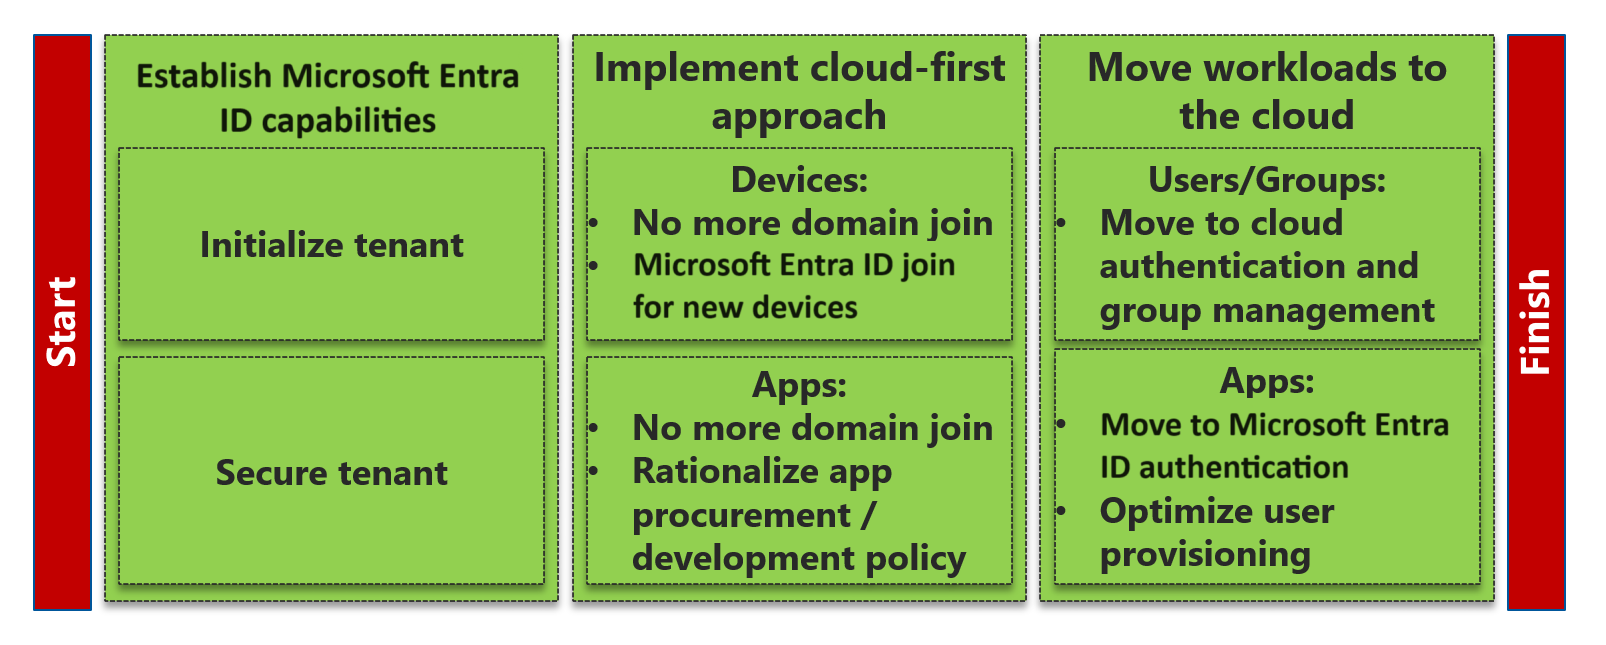 此圖顯示從 Active Directory 移轉至 Microsoft Entra ID 的三個重要里程碑：建立 Microsoft Entra 功能、實作雲端優先方法，以及將工作負載移至雲端。